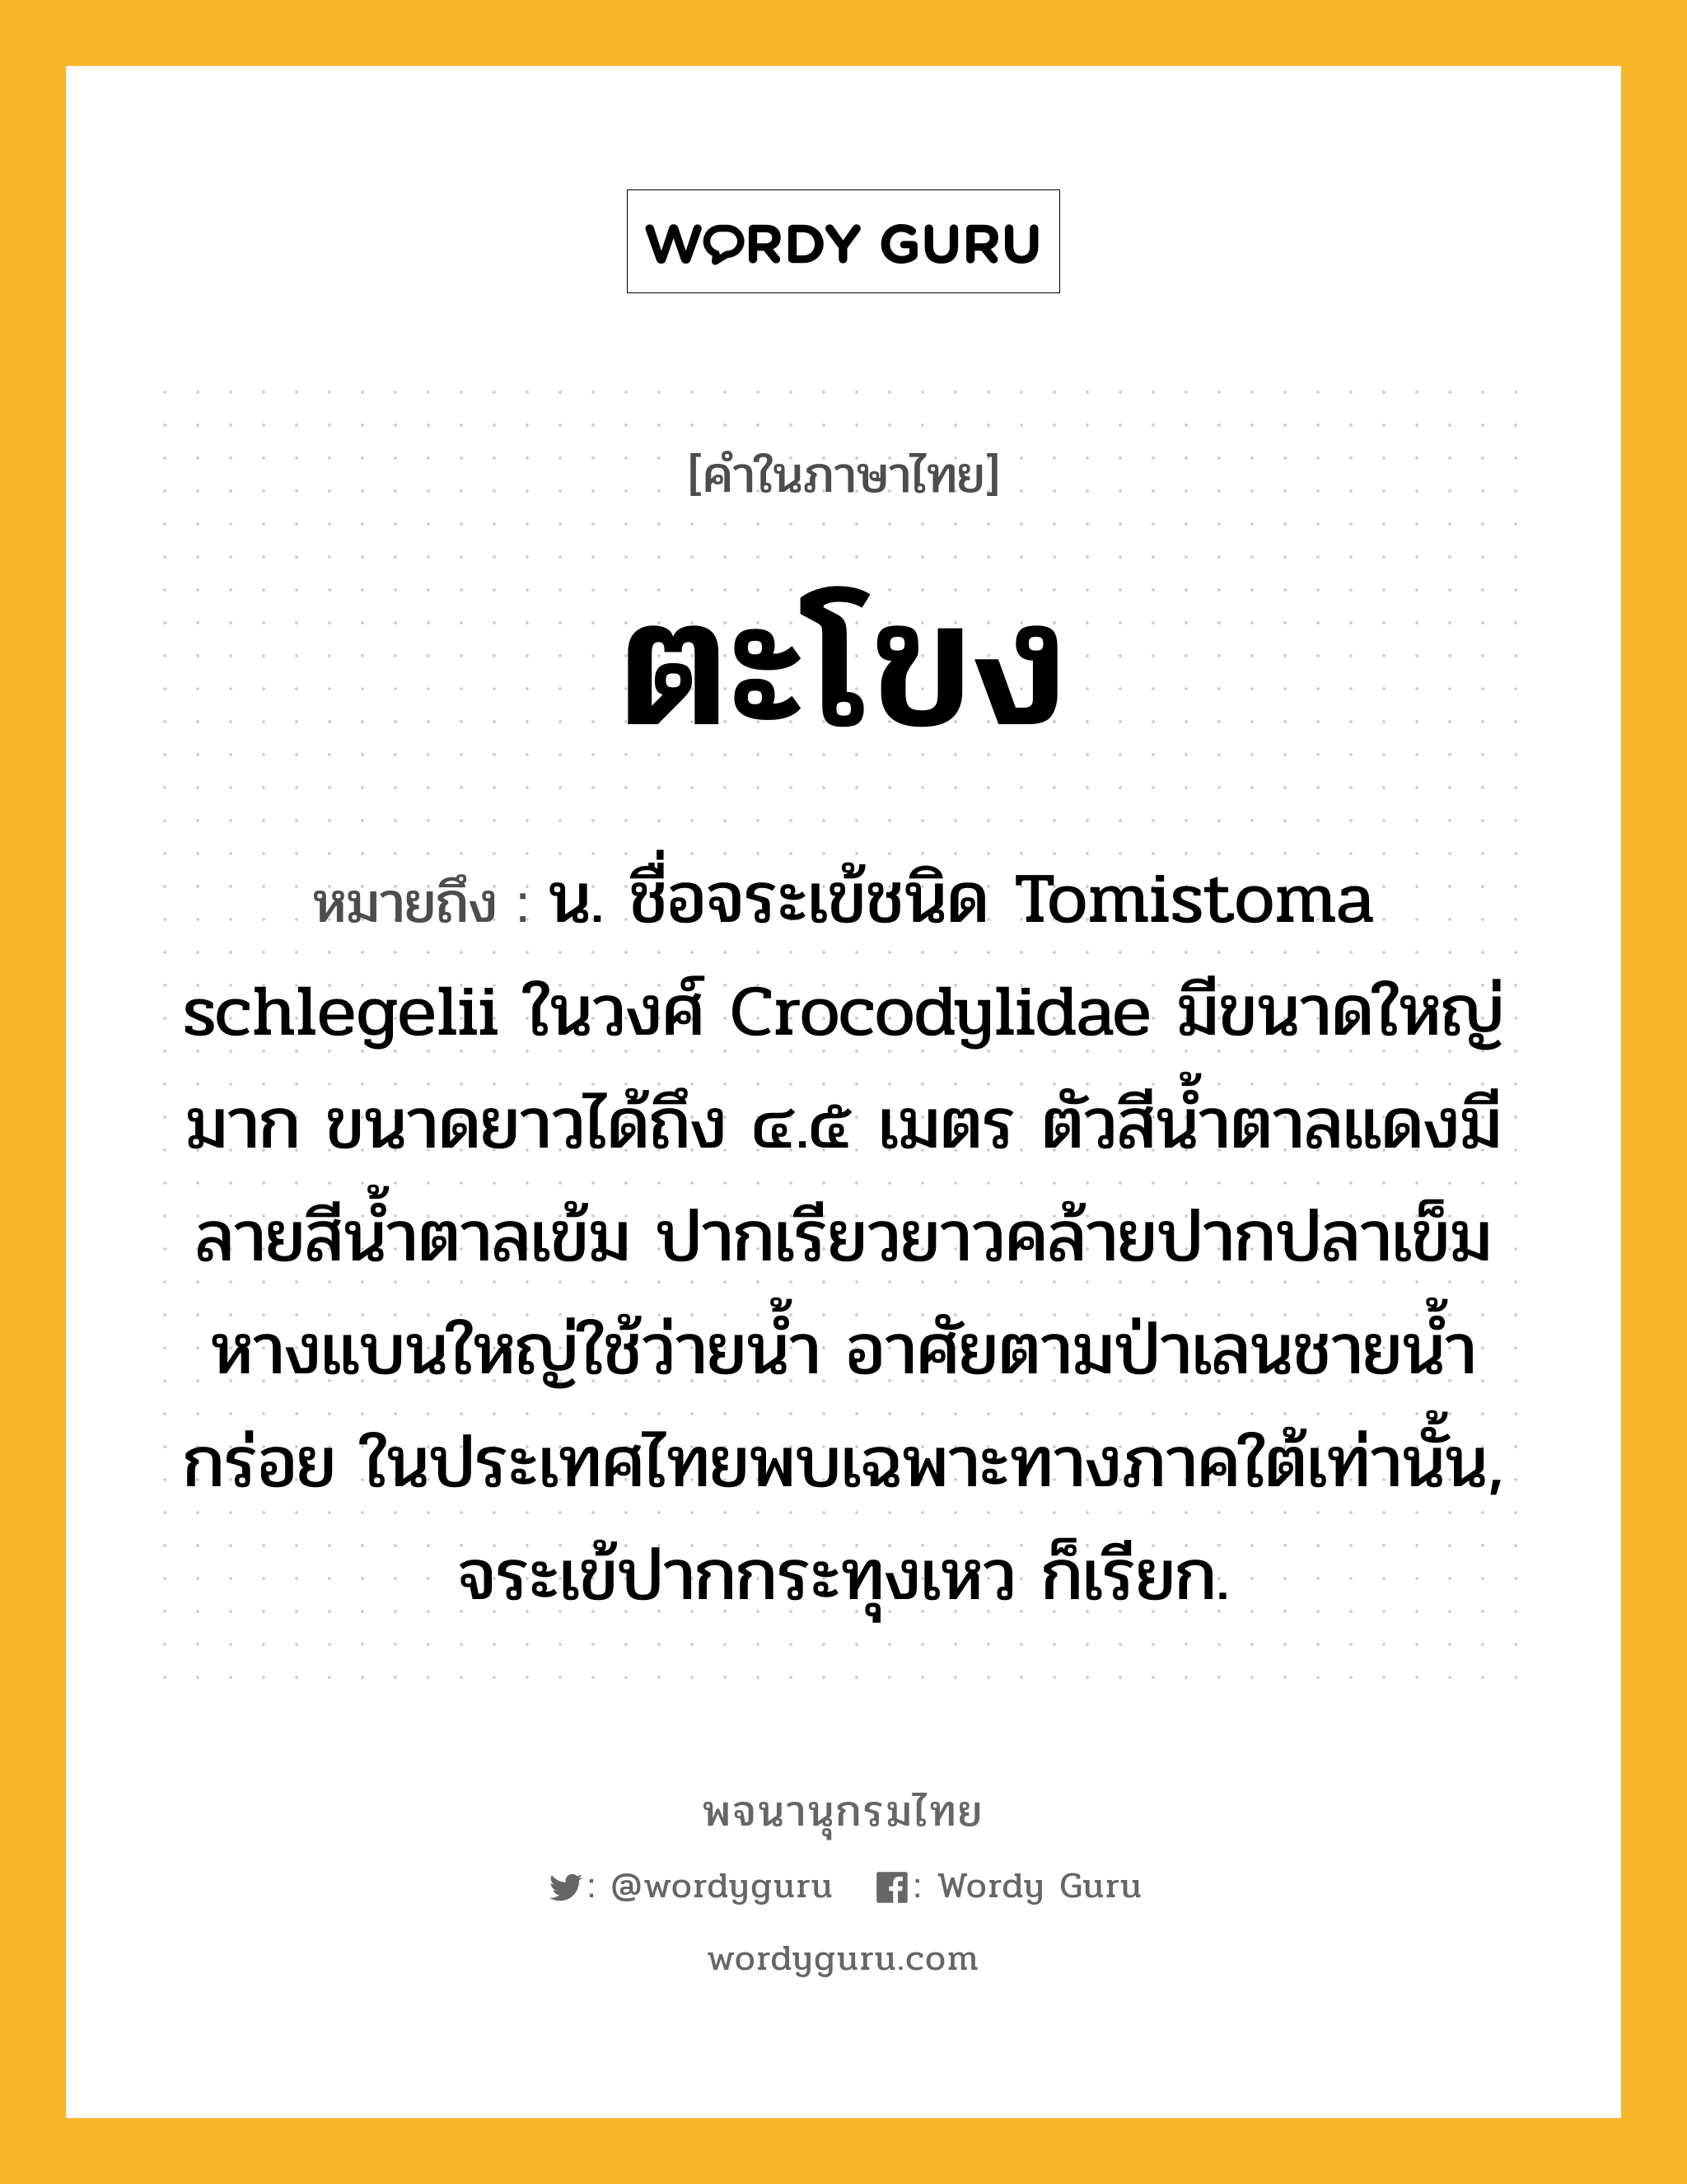 ตะโขง หมายถึงอะไร?, คำในภาษาไทย ตะโขง หมายถึง น. ชื่อจระเข้ชนิด Tomistoma schlegelii ในวงศ์ Crocodylidae มีขนาดใหญ่มาก ขนาดยาวได้ถึง ๔.๕ เมตร ตัวสีนํ้าตาลแดงมีลายสีนํ้าตาลเข้ม ปากเรียวยาวคล้ายปากปลาเข็ม หางแบนใหญ่ใช้ว่ายนํ้า อาศัยตามป่าเลนชายนํ้ากร่อย ในประเทศไทยพบเฉพาะทางภาคใต้เท่านั้น, จระเข้ปากกระทุงเหว ก็เรียก.